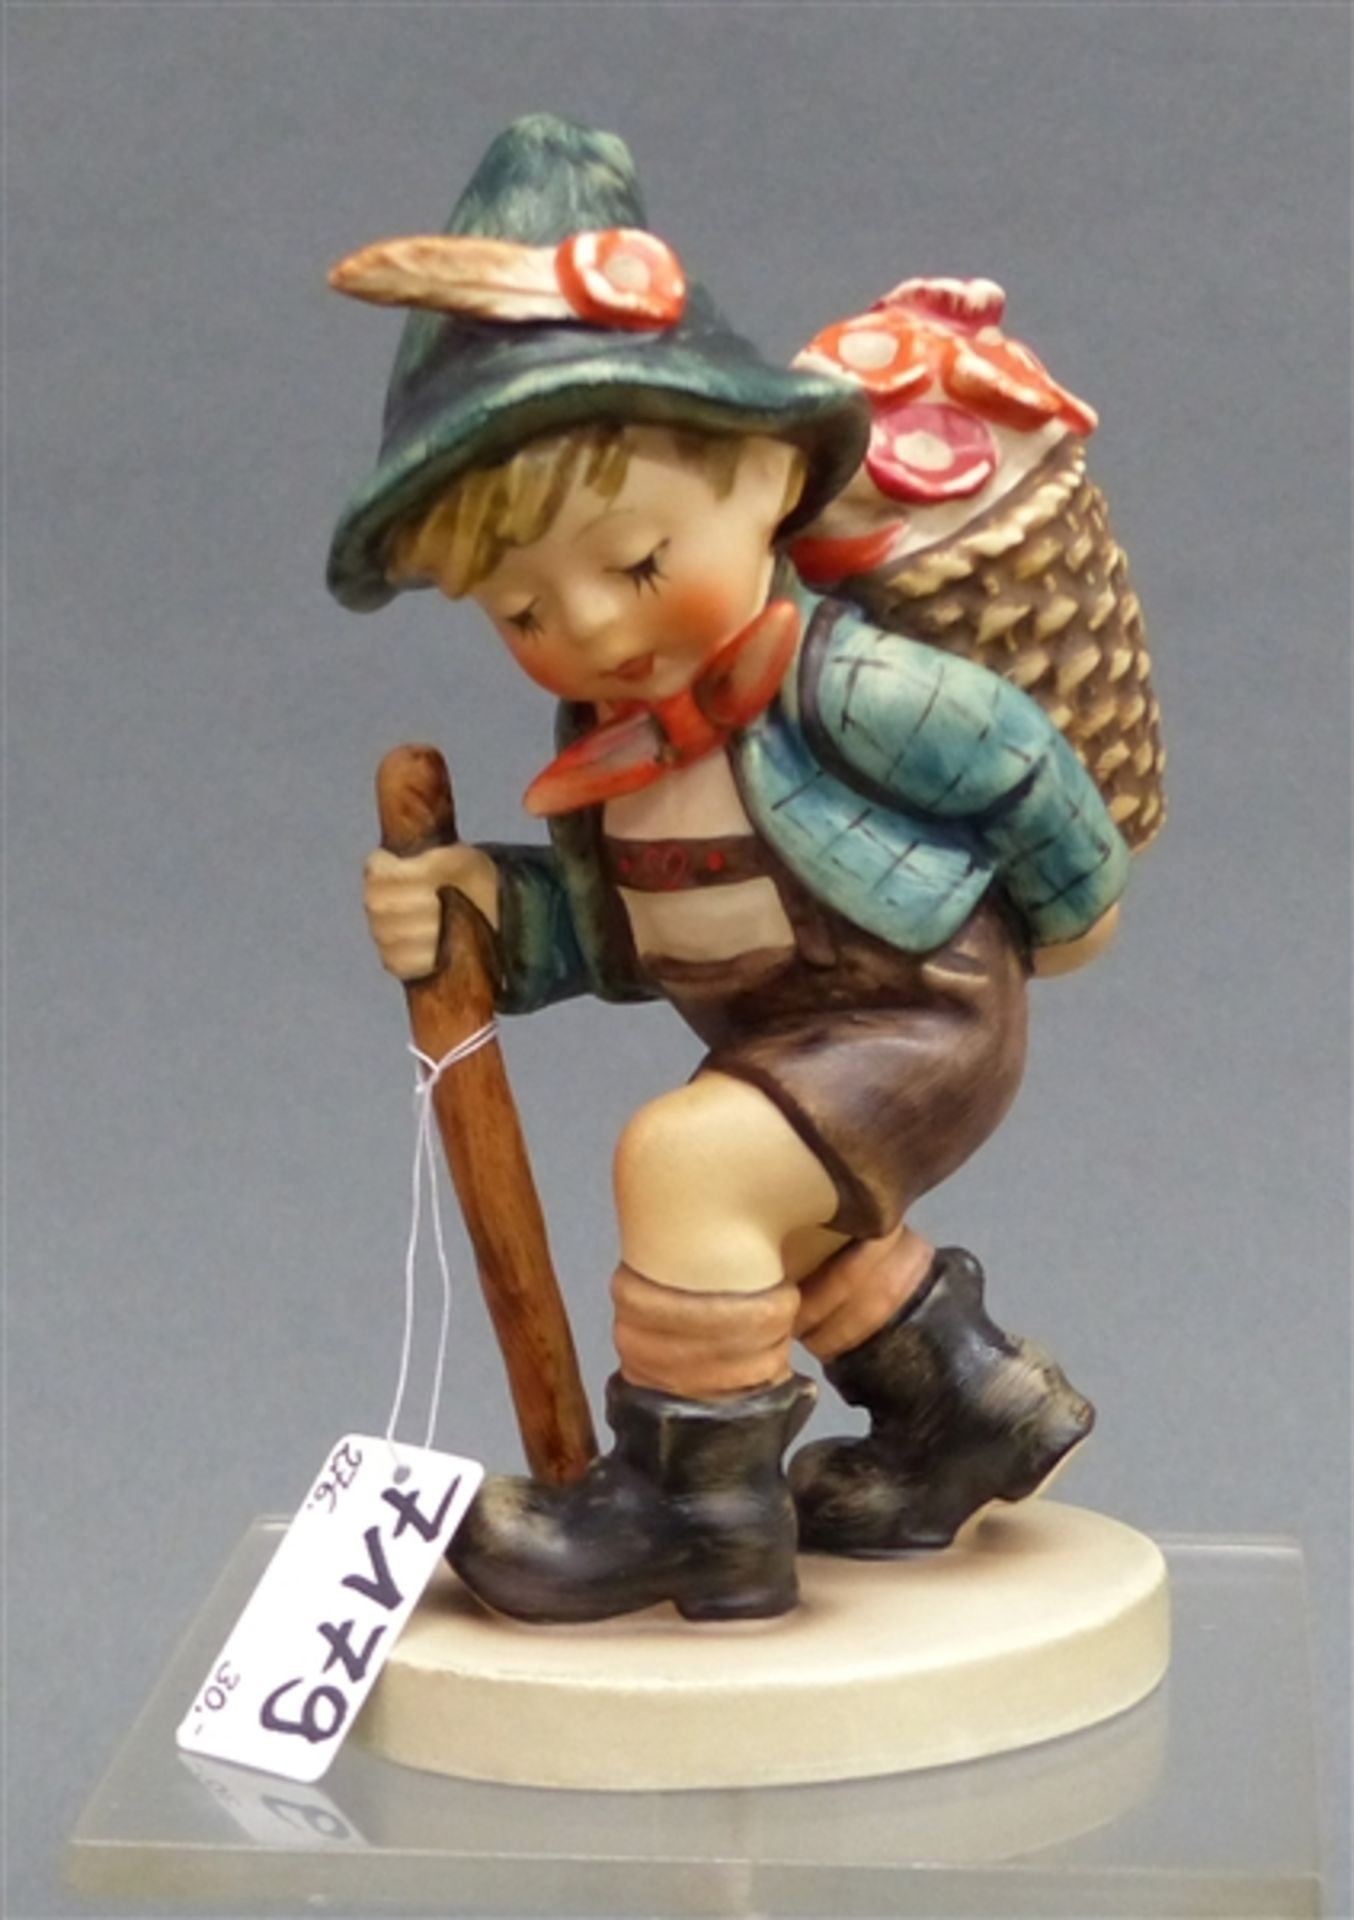 Hummelfigur Porzellan, Manufaktur Goebel, "Zum Bauernmarkt", Nr. 381, h 13,5 cm,